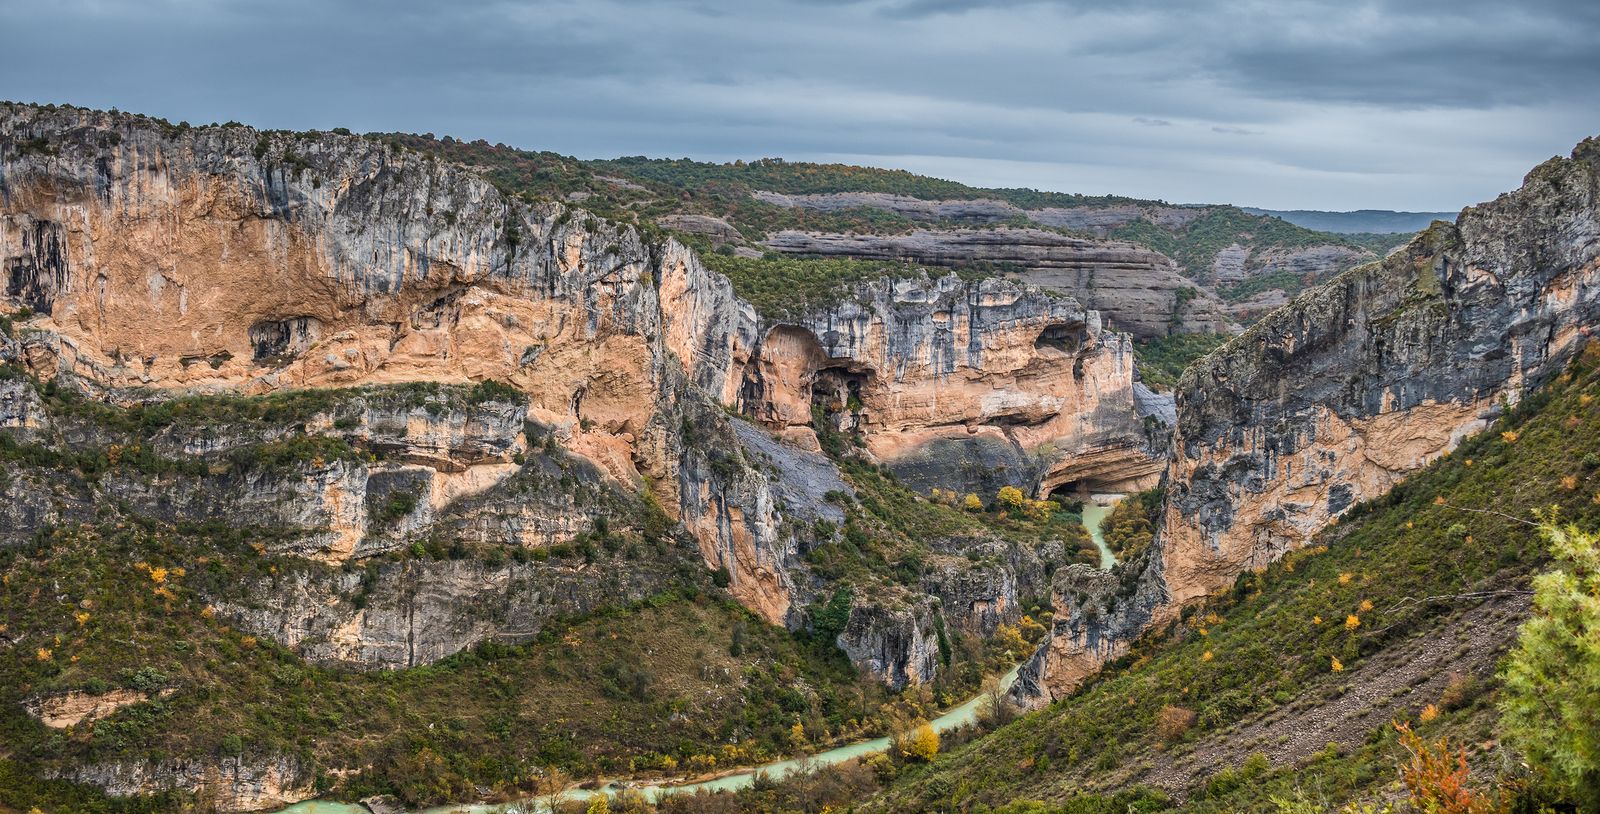 Visita al bello entorno natural del cañón del río Vero en la provincia de Huesca